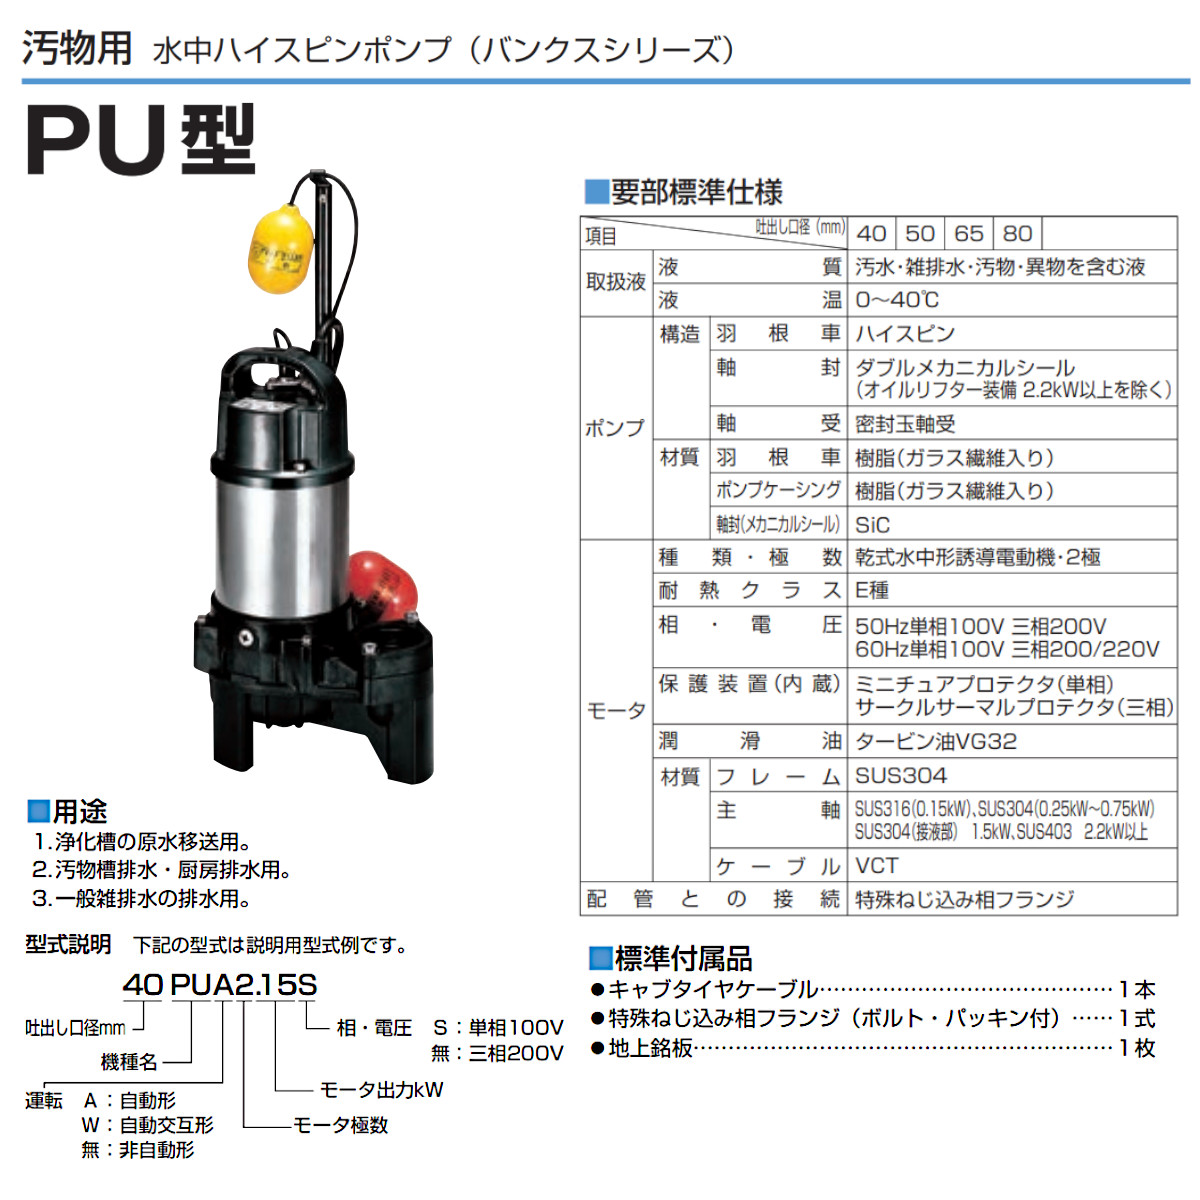 ツルミ 汚物用 水中ポンプ 40PUA2.15S / 40PUA2.15 自動形 バンクス